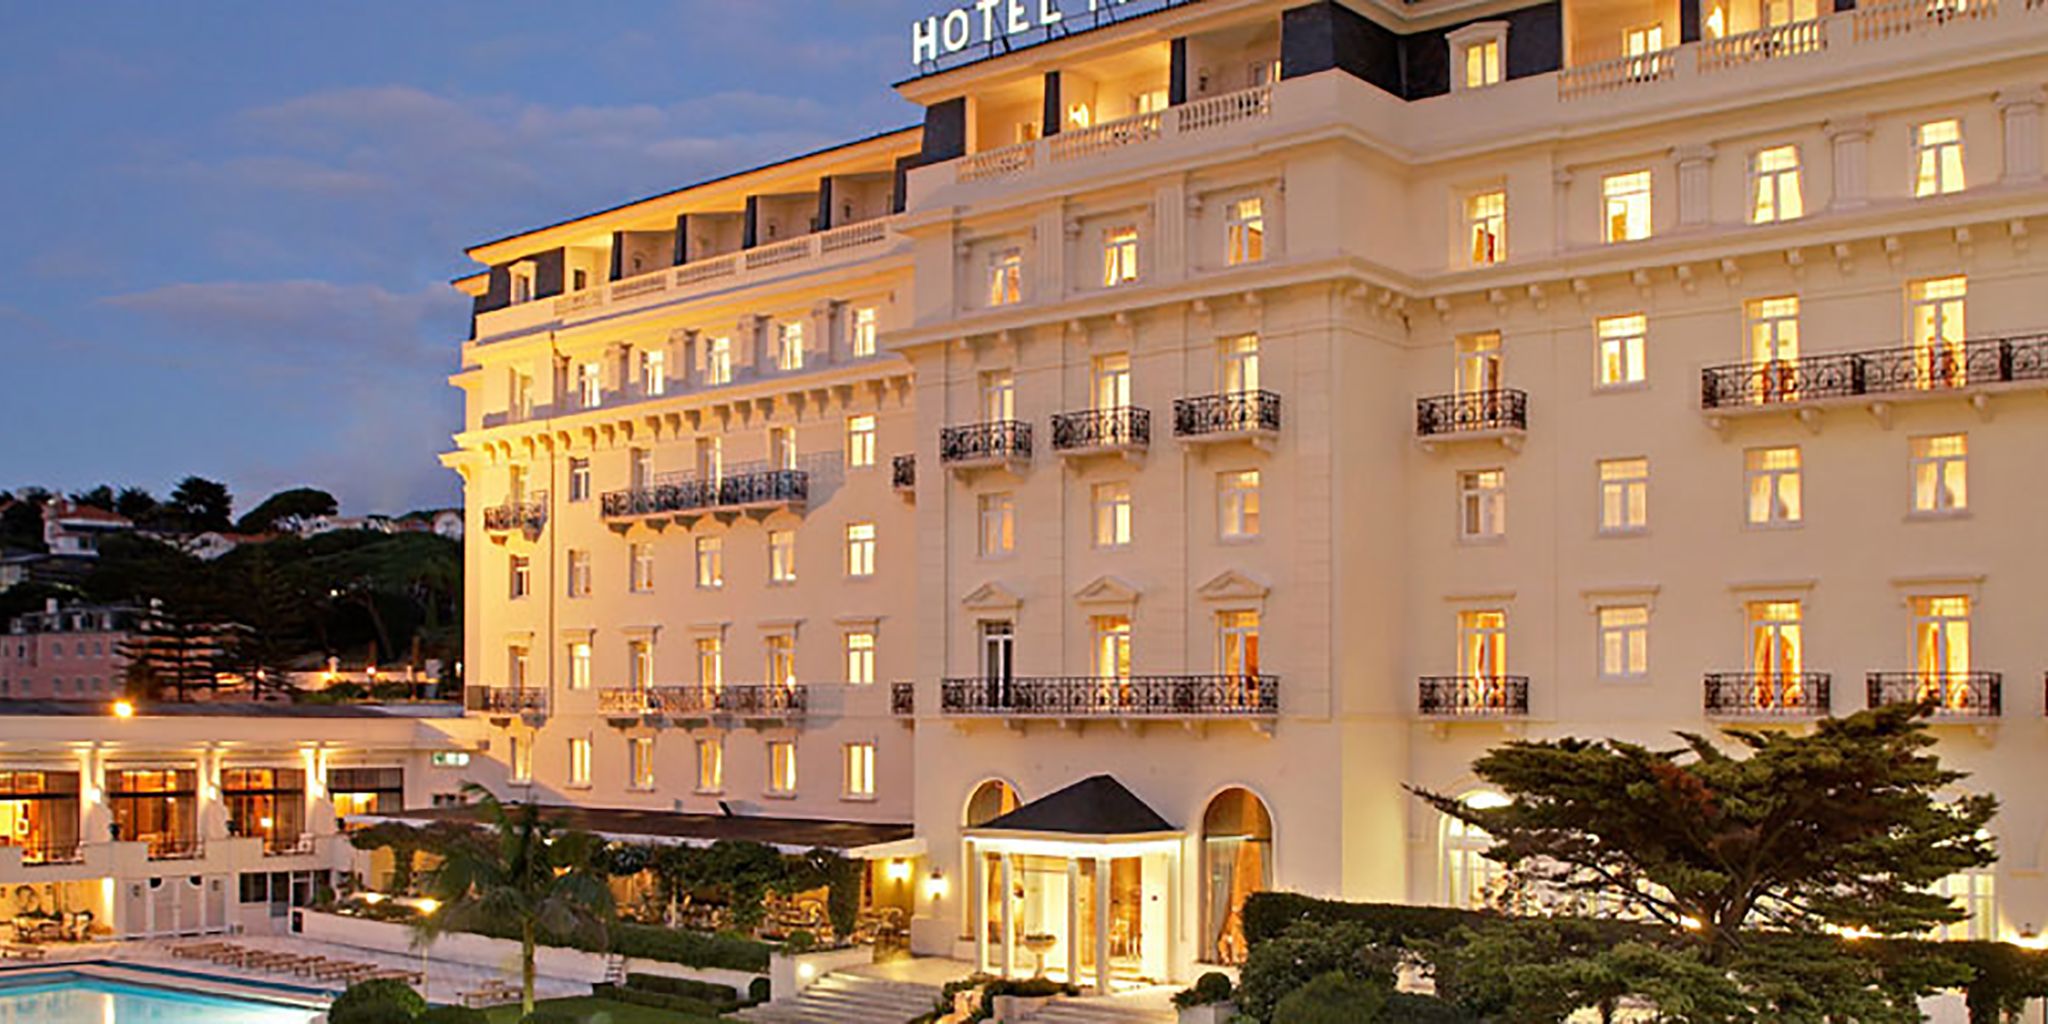 Palacio Estoril Hotel & Golf in Estoril, Portugal